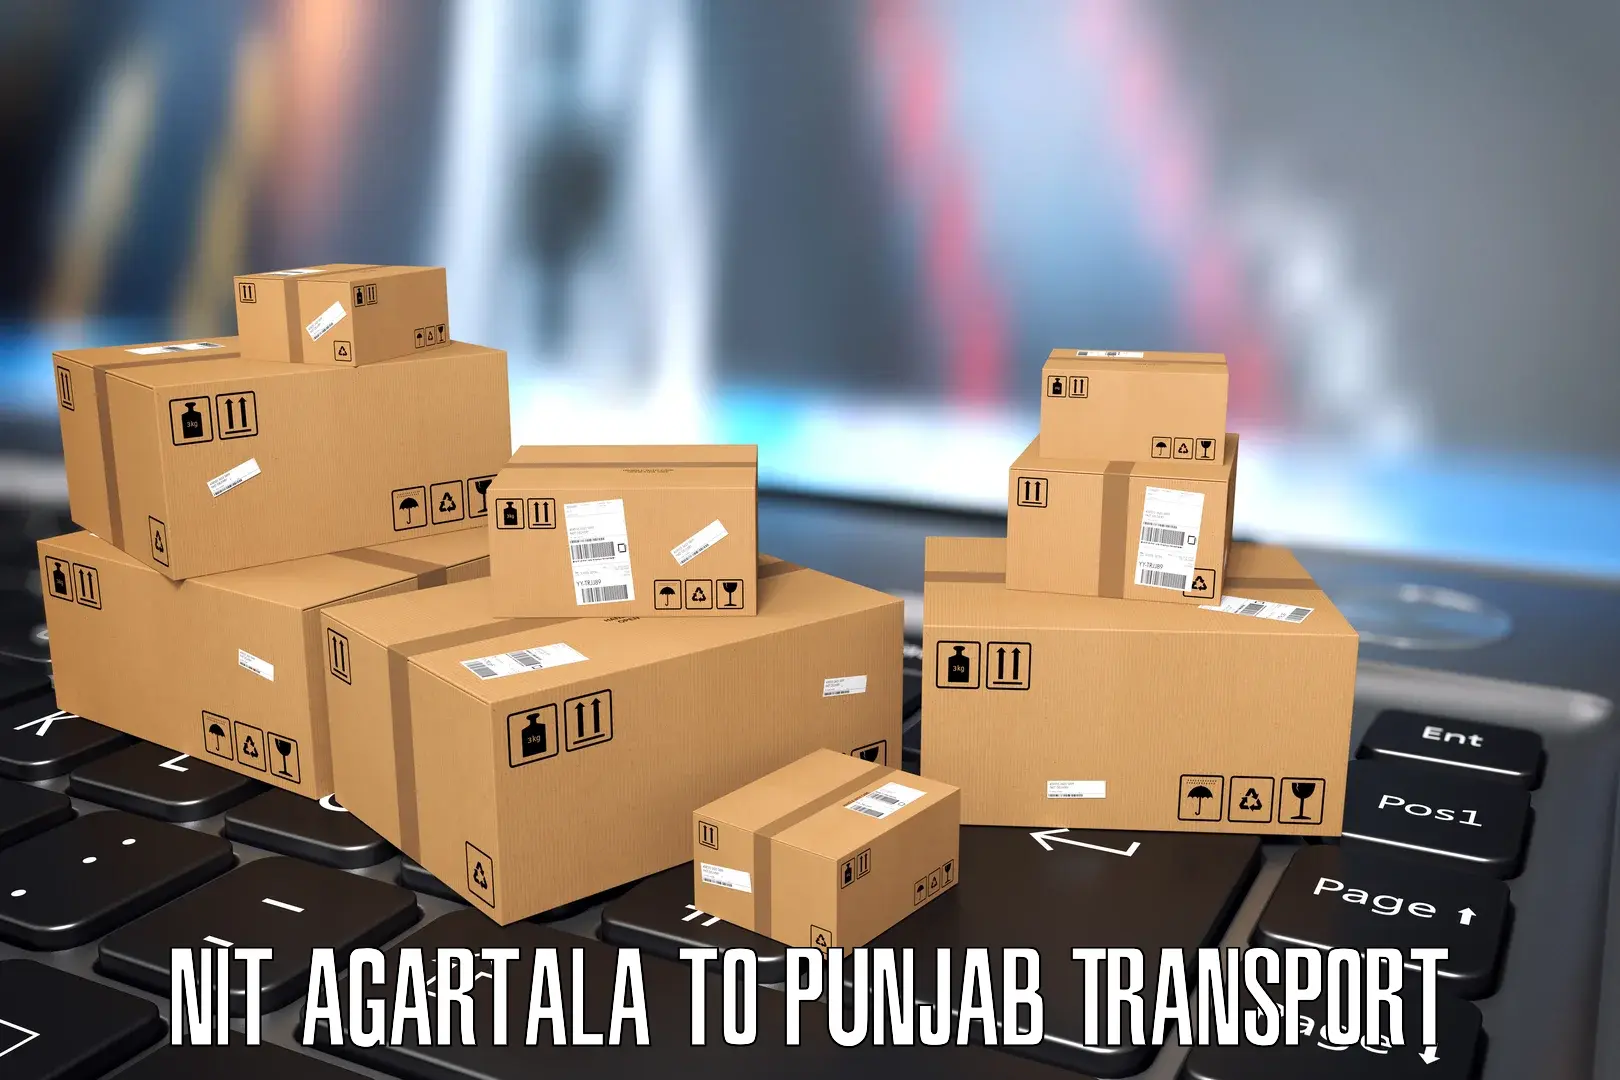 Bike shipping service NIT Agartala to Abohar